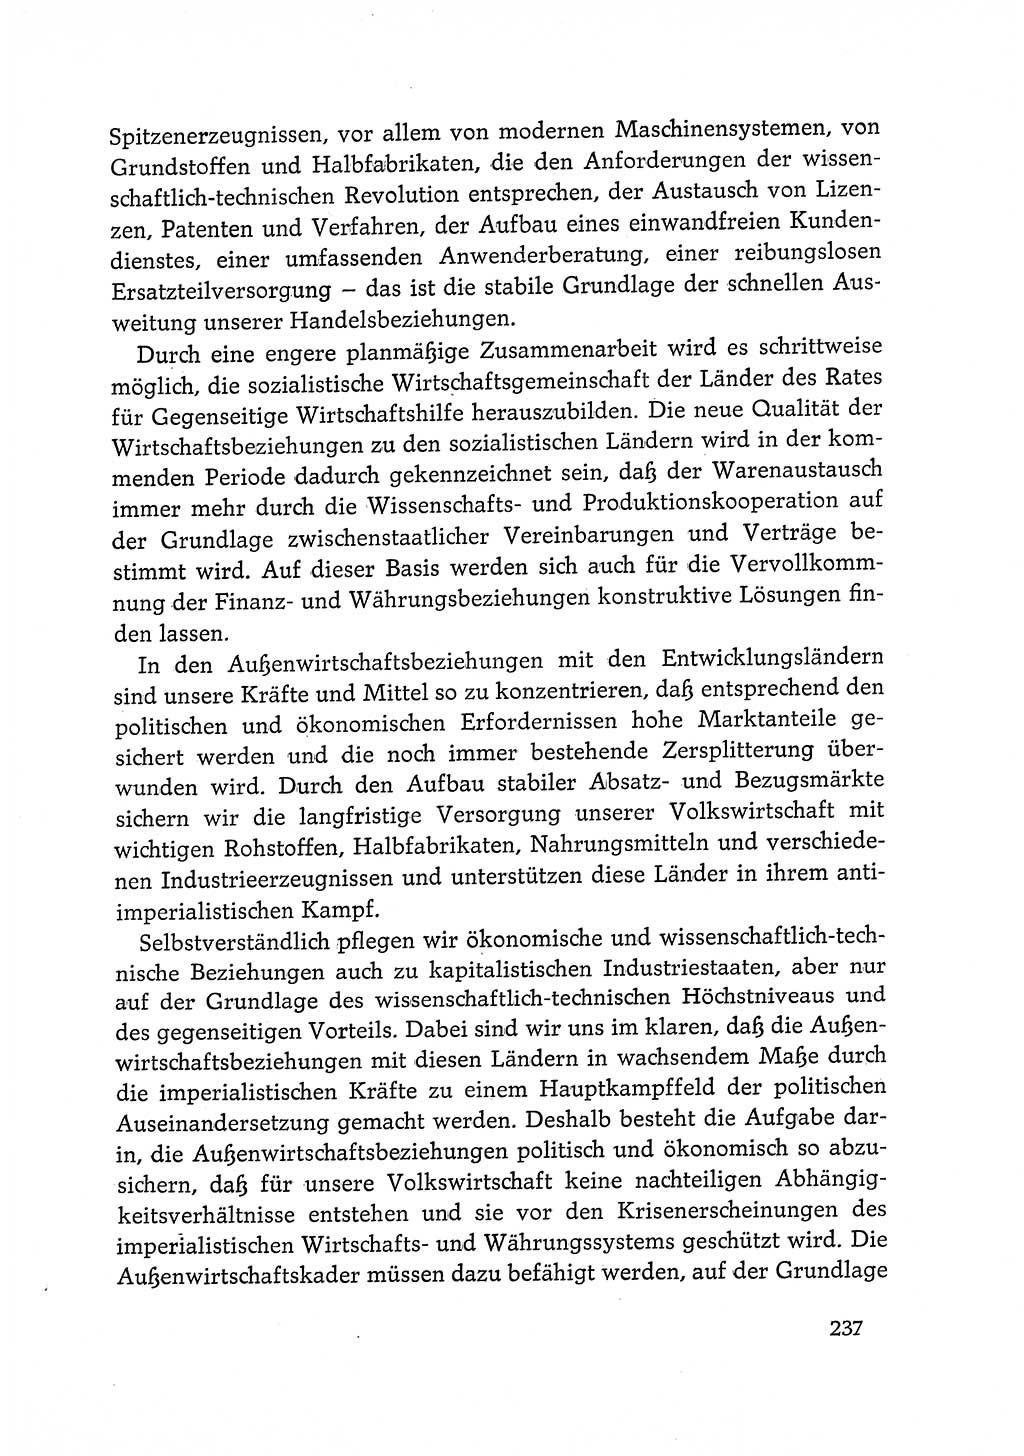 Dokumente der Sozialistischen Einheitspartei Deutschlands (SED) [Deutsche Demokratische Republik (DDR)] 1968-1969, Seite 237 (Dok. SED DDR 1968-1969, S. 237)